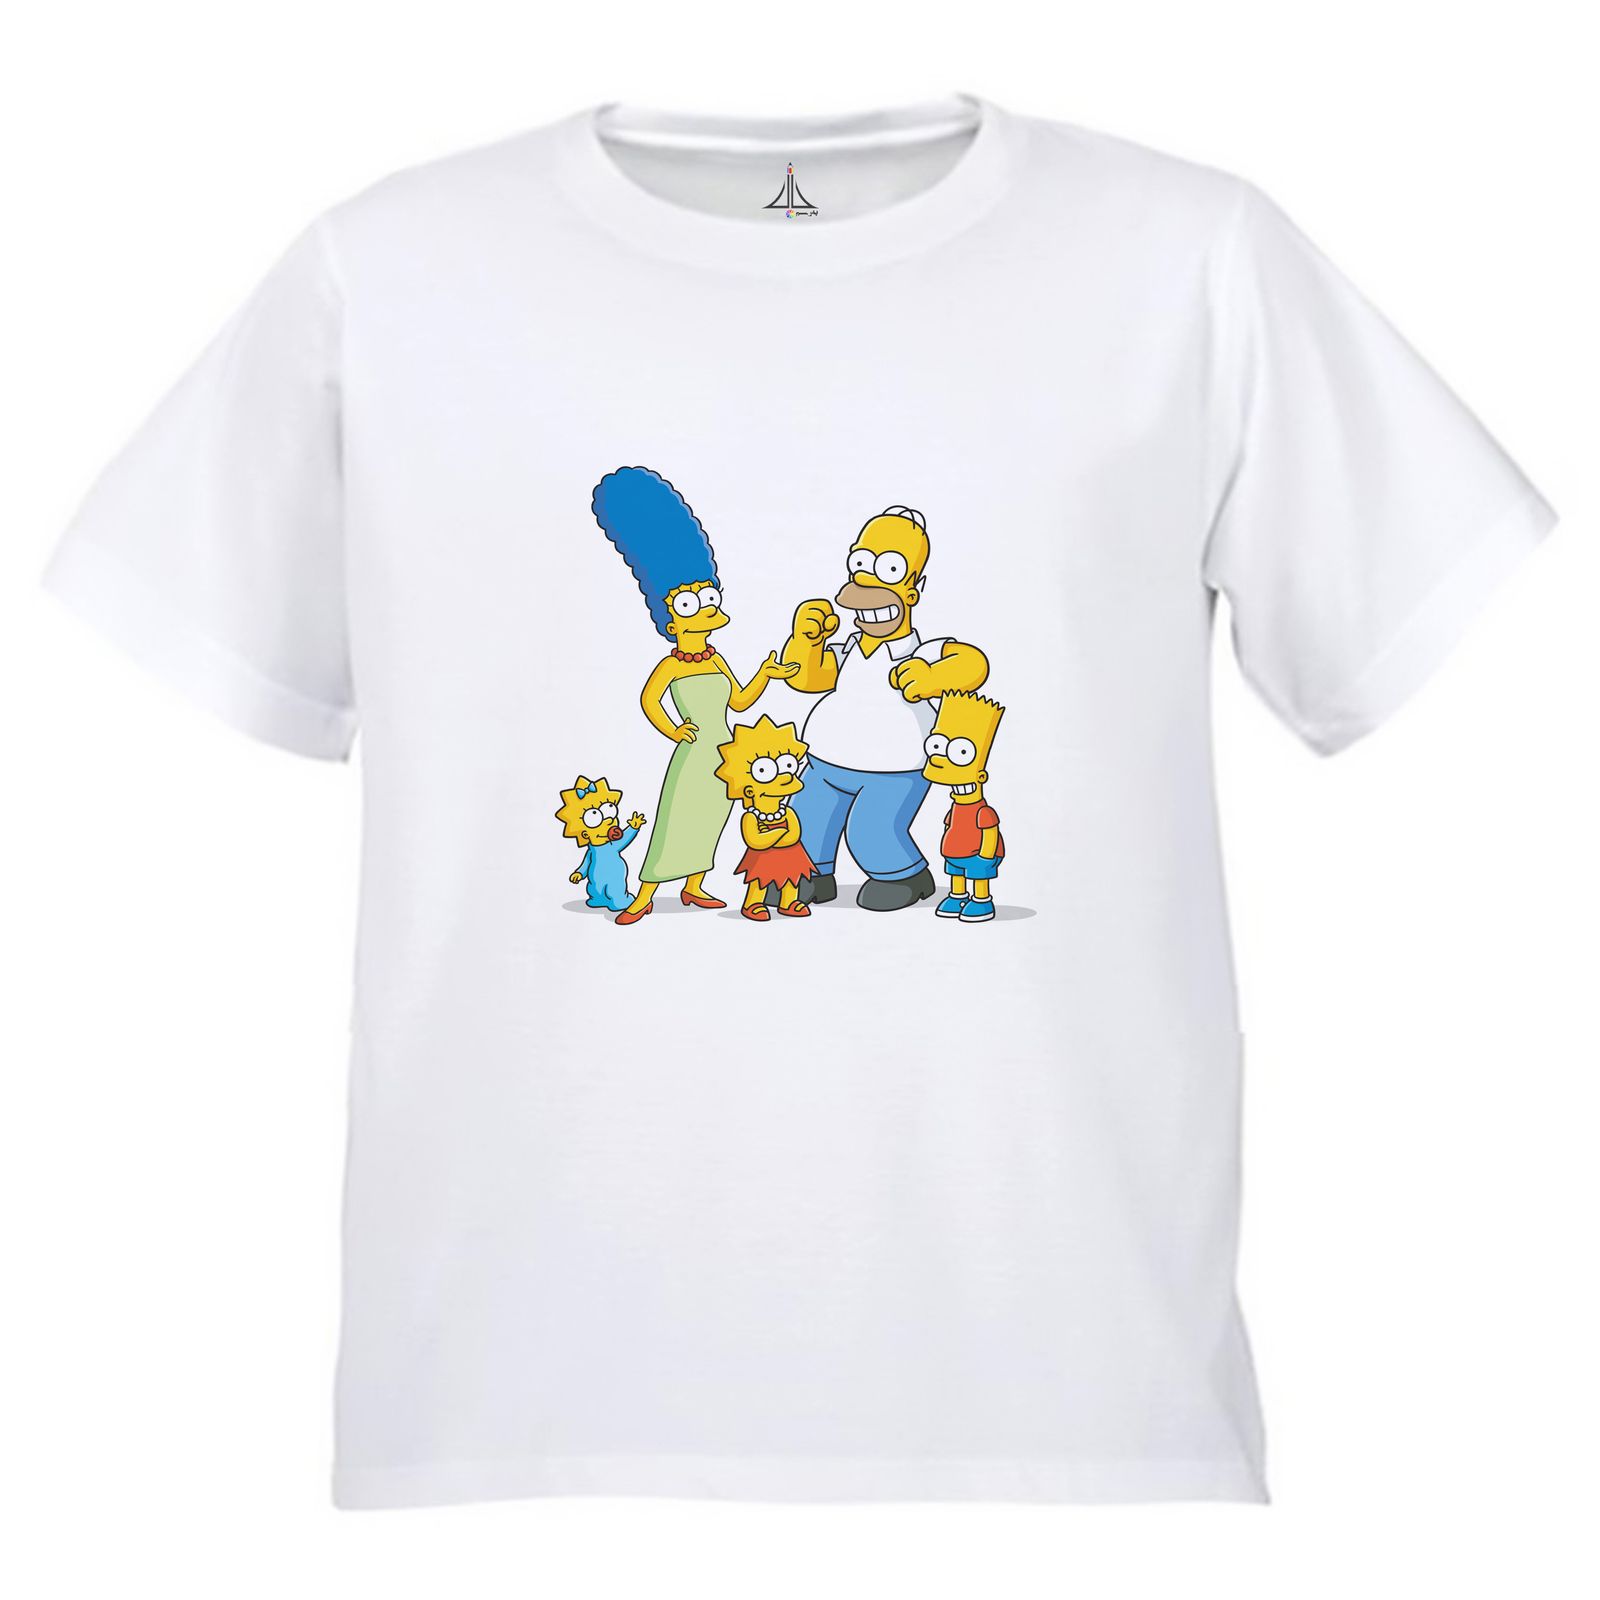 تی شرت آستین کوتاه بچگانه به رسم مدل سیپسون ها کد 9941 -  - 1